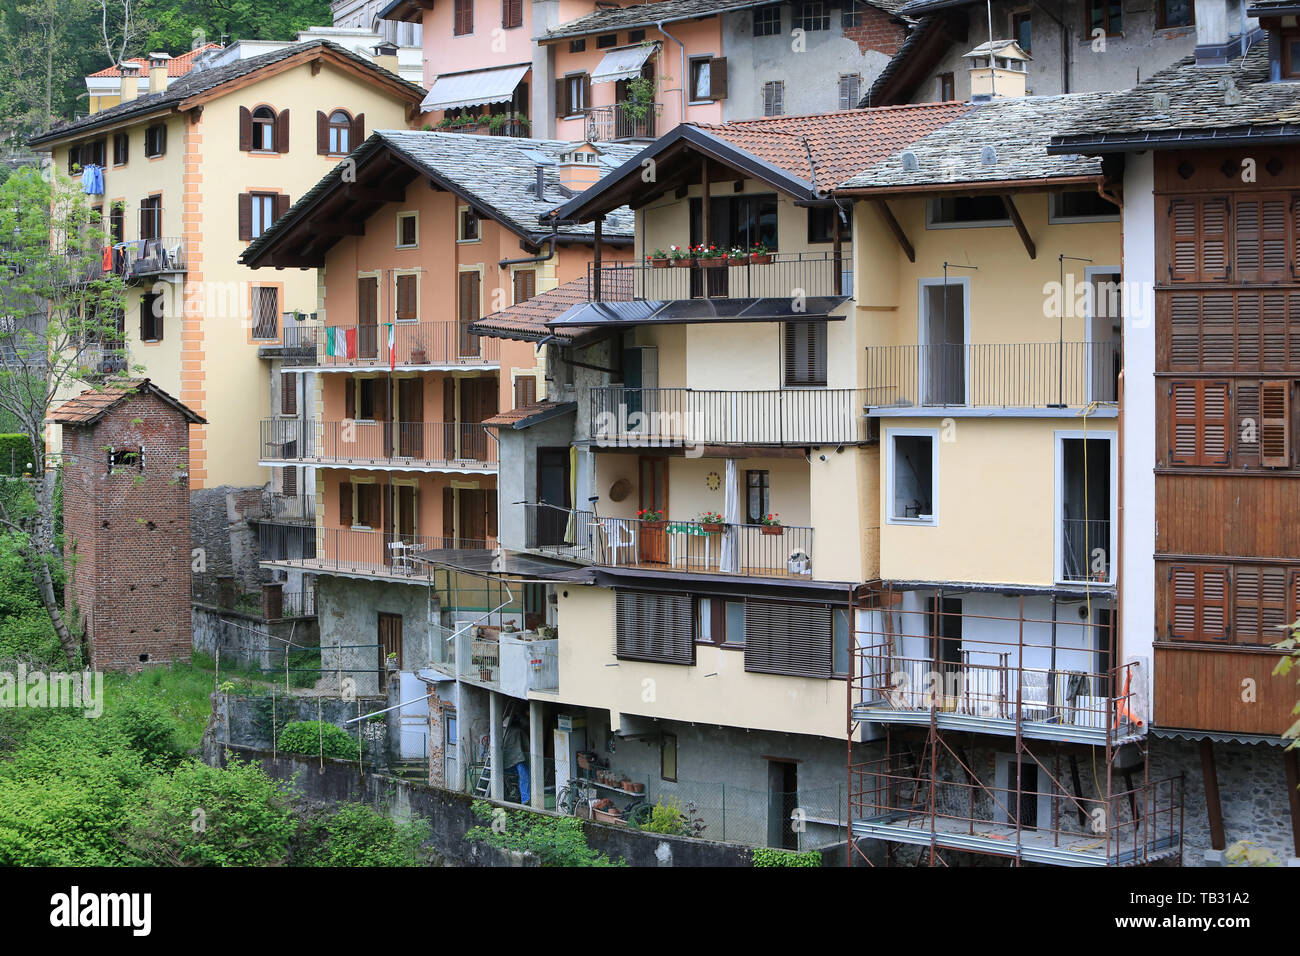 Maisons typiques sur la Rivière de Mastallone de Varallo Sesia. Italie. Typische Häuser am Fluss Mastallone von Varallo Sesia. Italien. Italien. Stockfoto